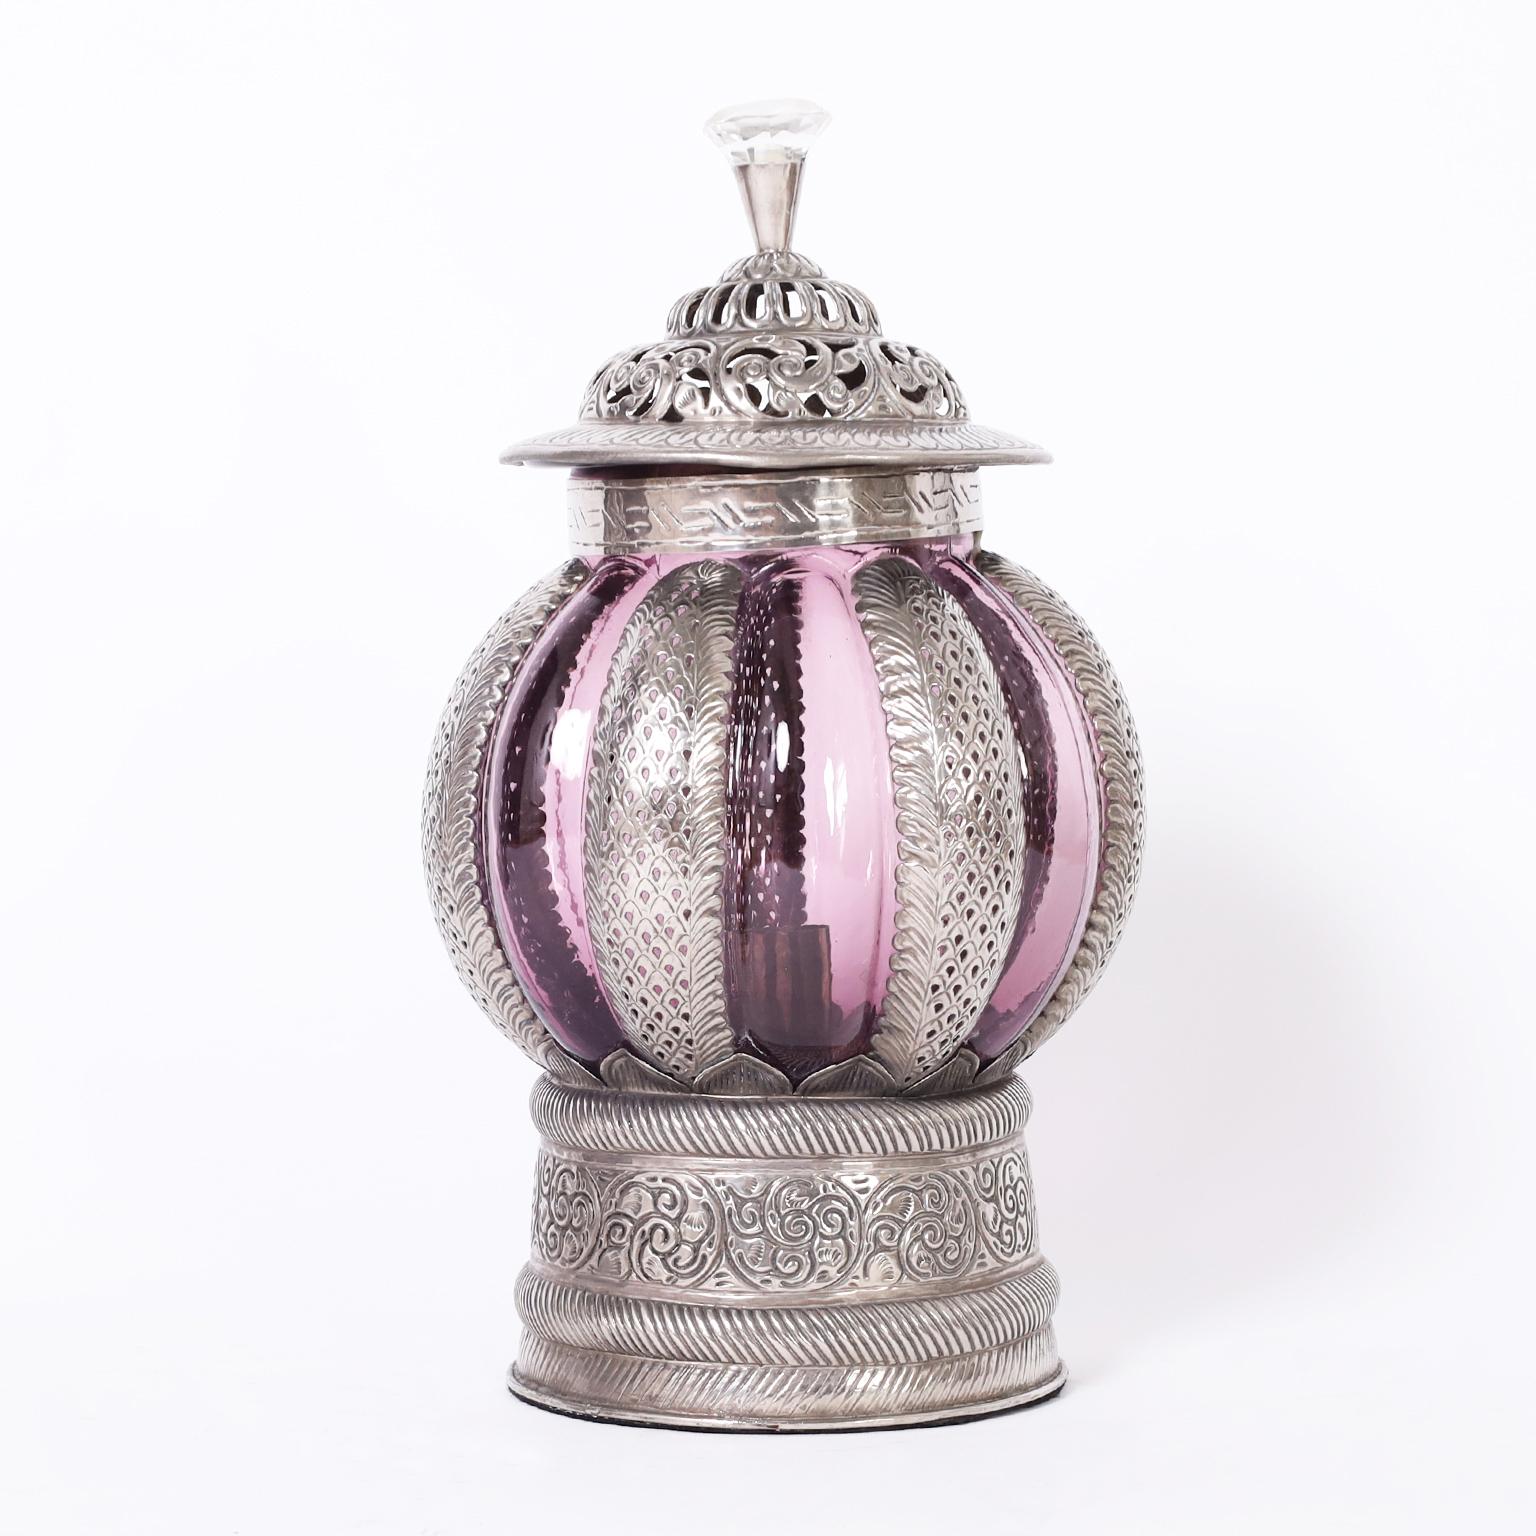 Intrigante paire de lanternes marocaines vintage en métal martelé à la main avec des motifs floraux, des poignées en verre taillé et des abat-jours en verre améthyste soufflé à la main.